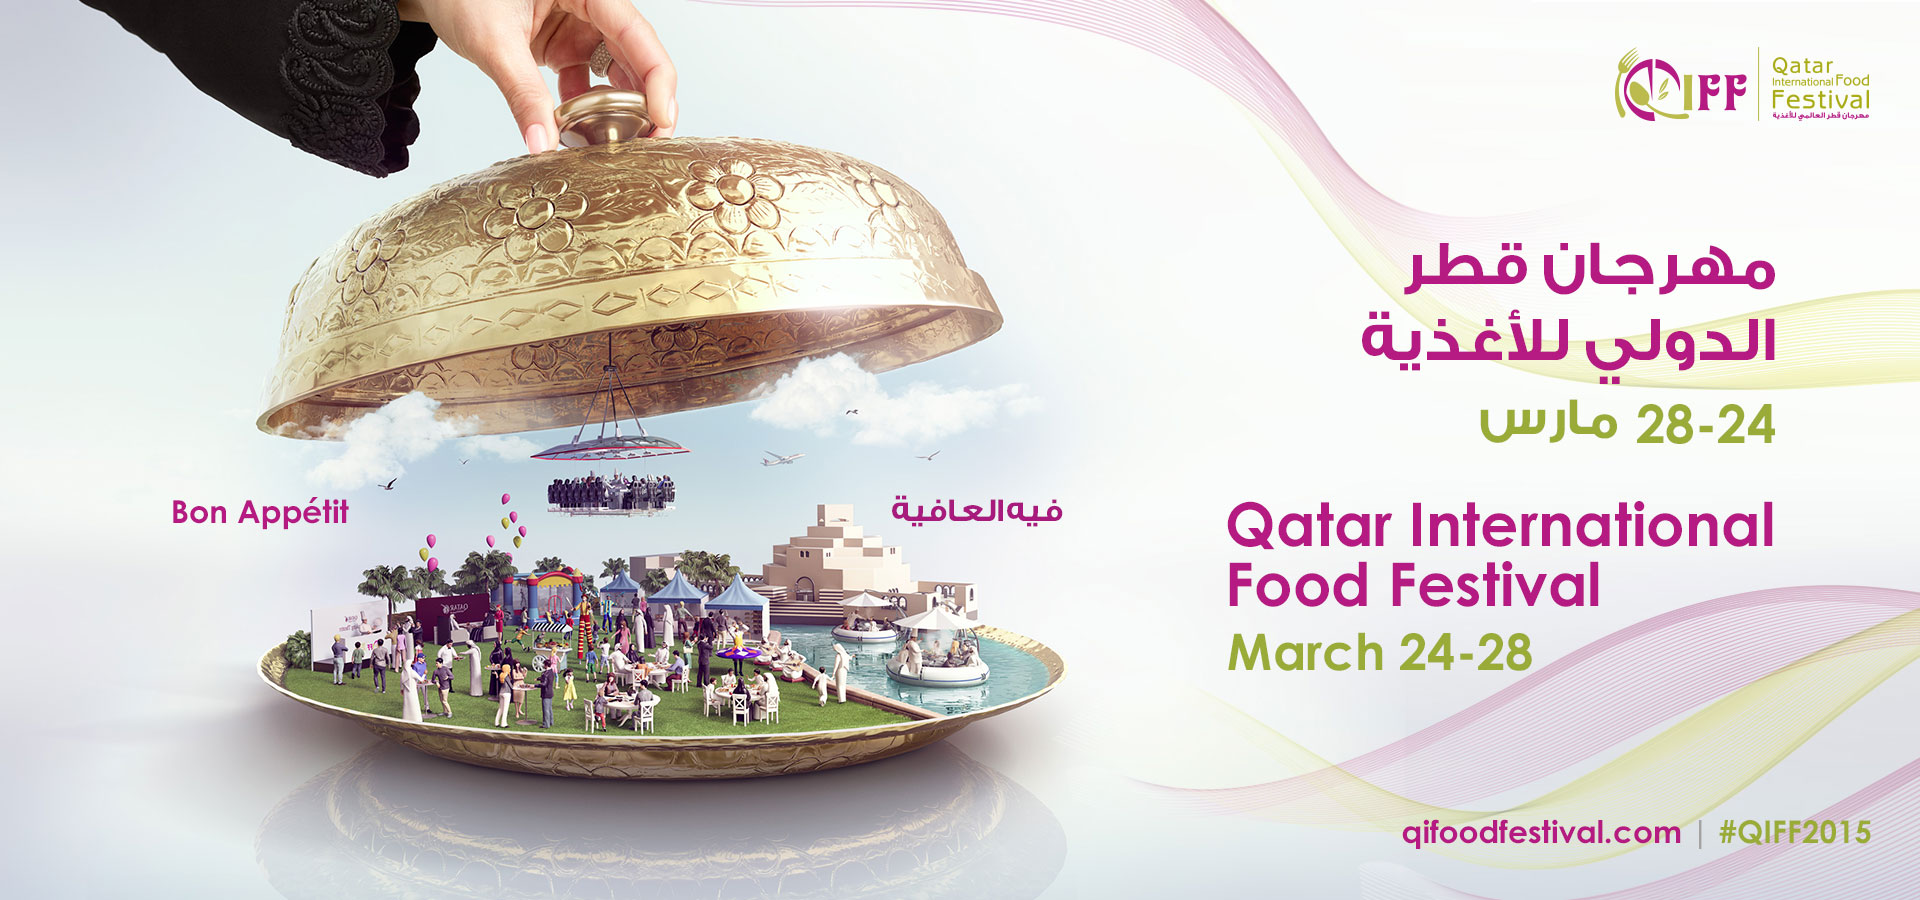 qatar-international-food-festival